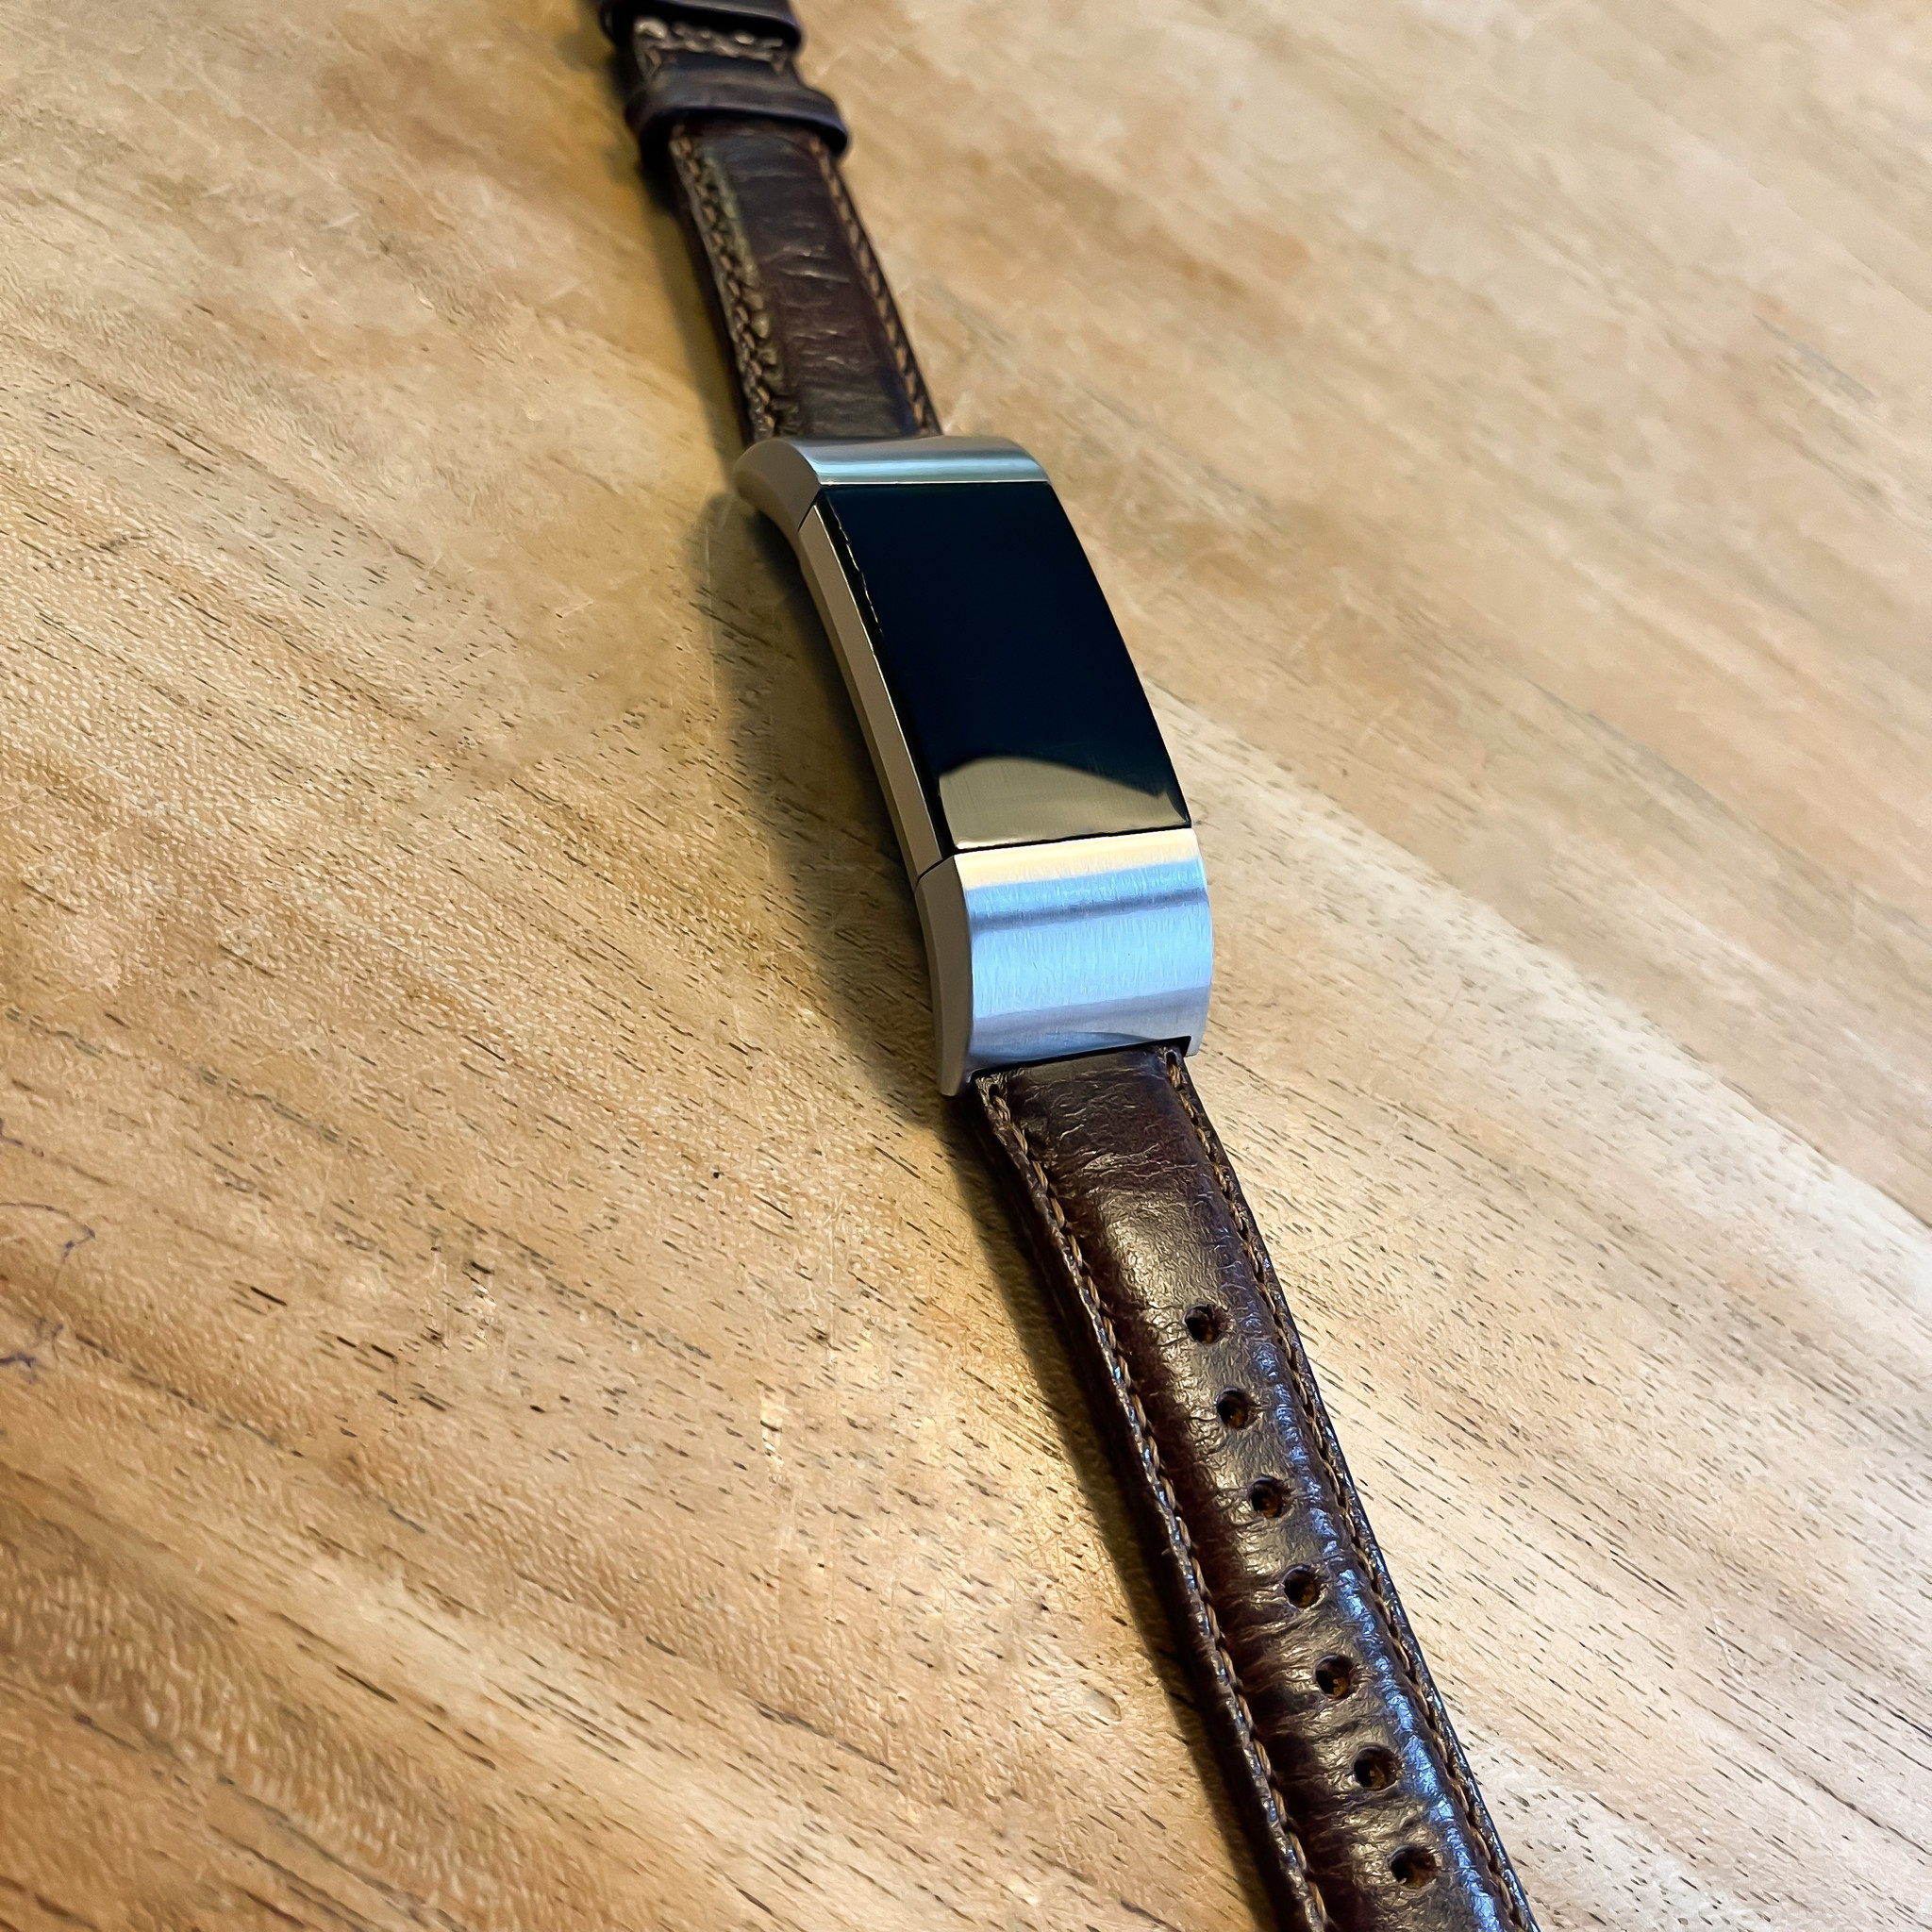 Bracelet véritable en cuir Fitbit Charge 2 - marron foncé